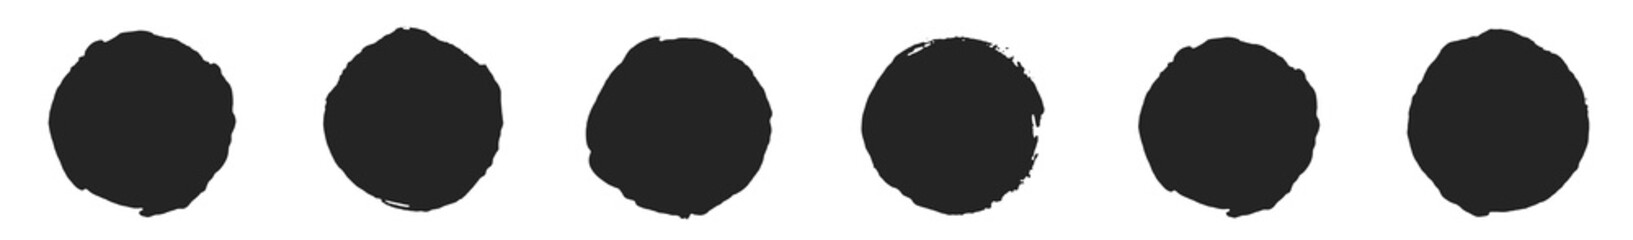 6 gemalte Kresie in schwarz als banner oder Vorlage für Button